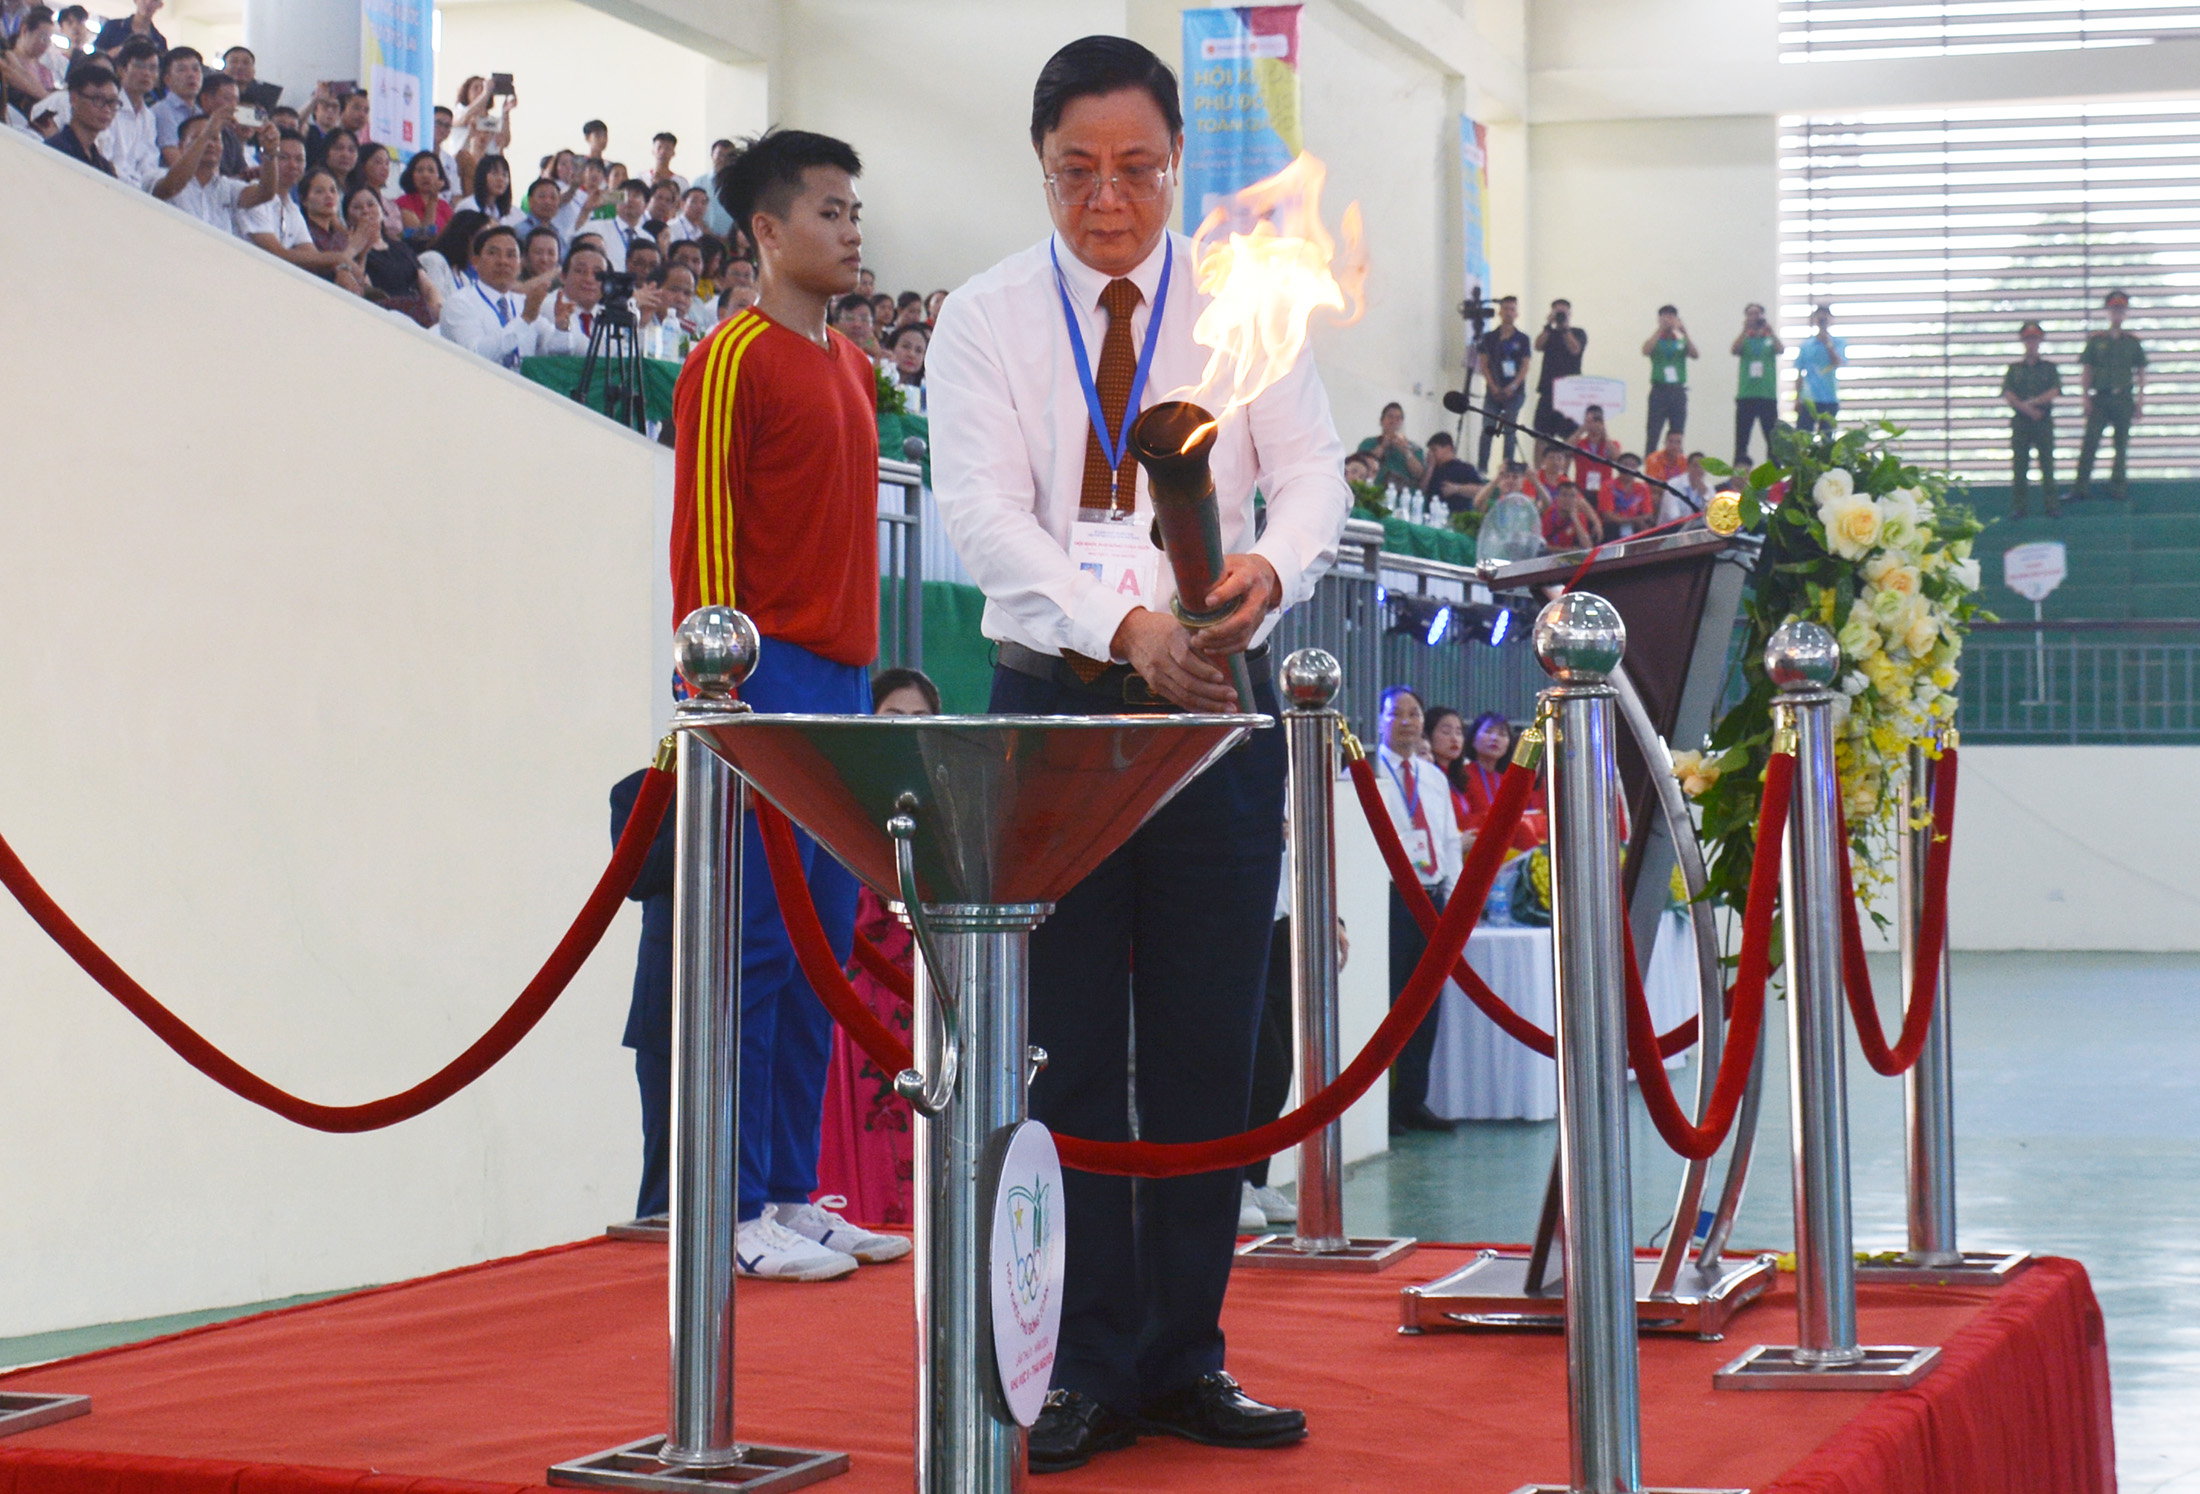 Đồng chí Đặng Xuân Trường, Phó Chủ tịch Thường trực UBND tỉnh Thái Nguyên, thắp đuốc khai mạc